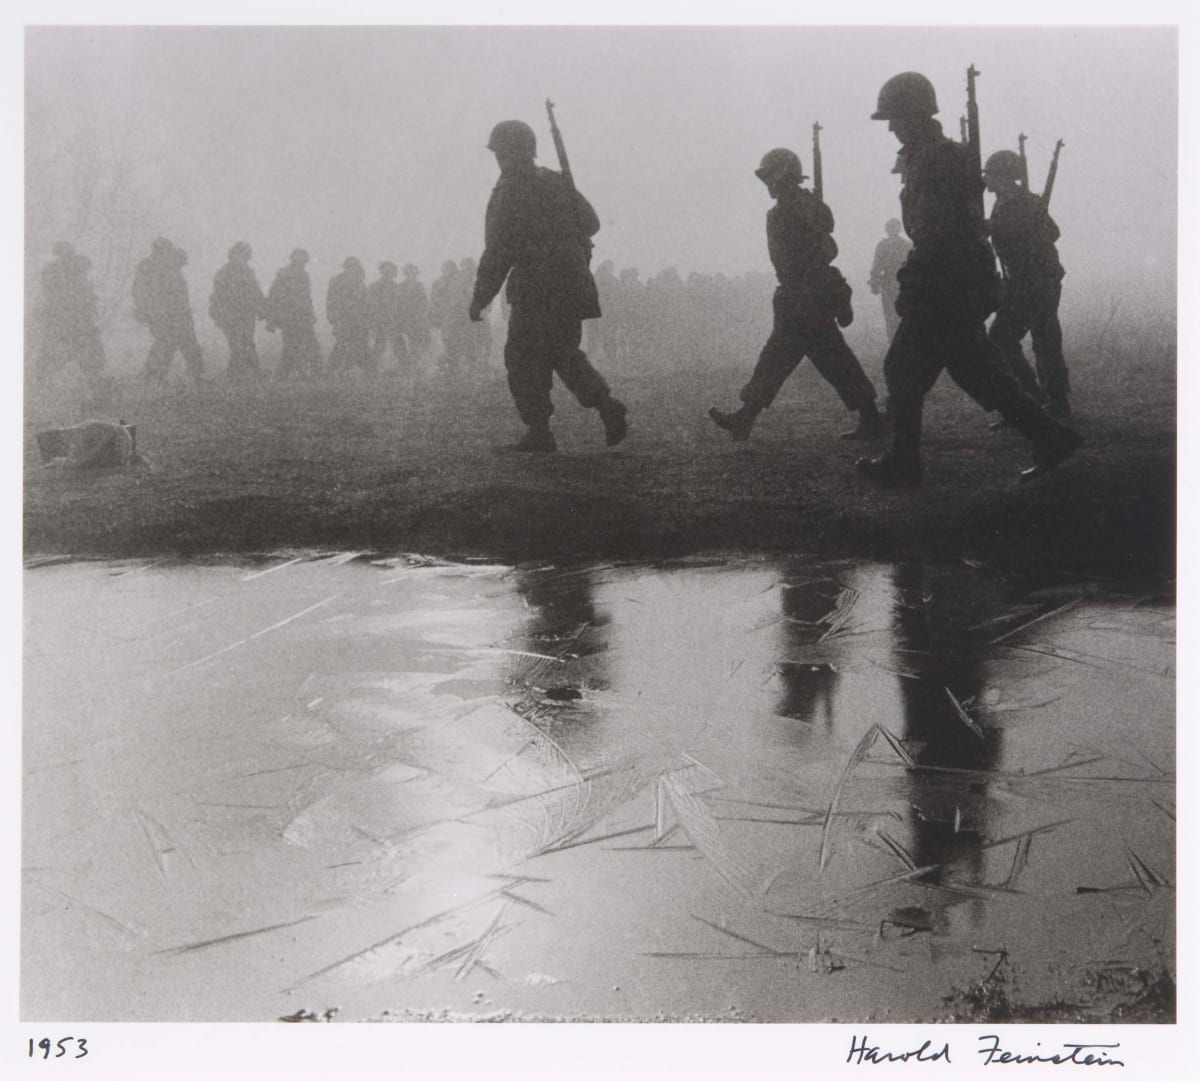 Soldiers in Icy Fog, Korea by Harold Feinstein 